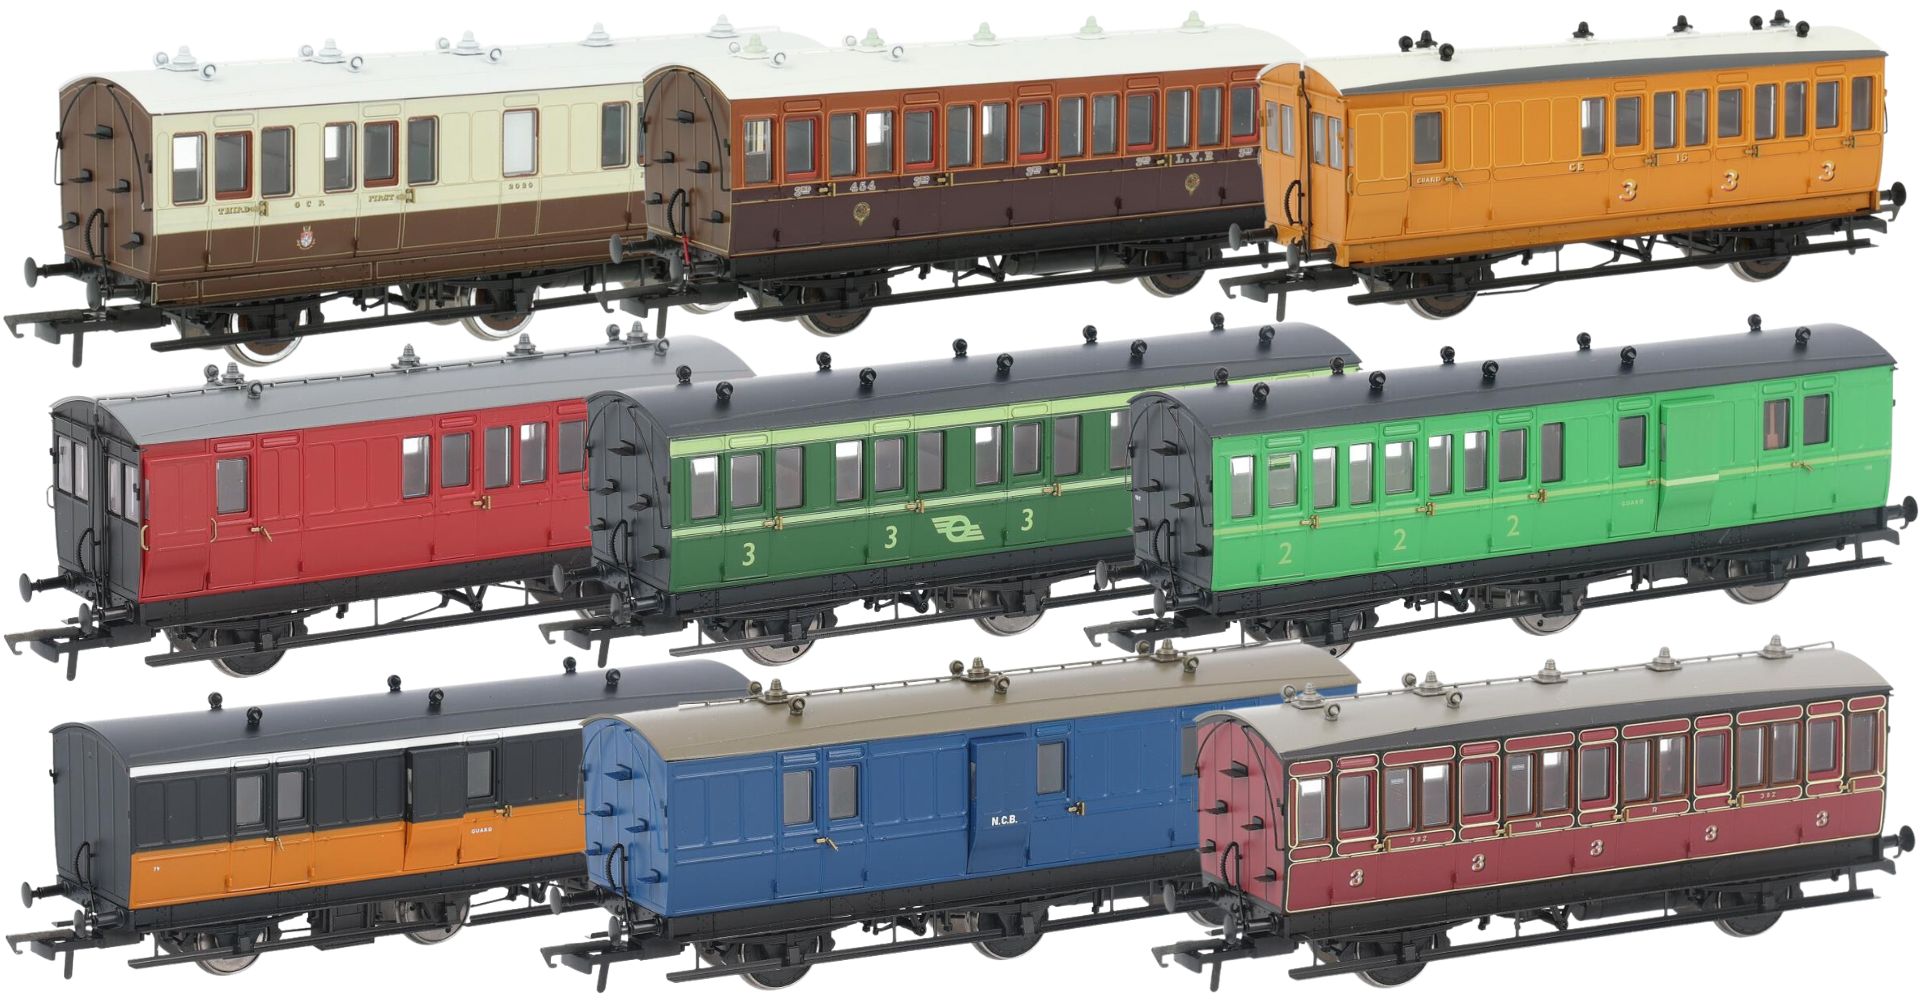 Hattons Originals OO Gauge (1:76 Scale) 4 and 6 wheel Genesis coaches